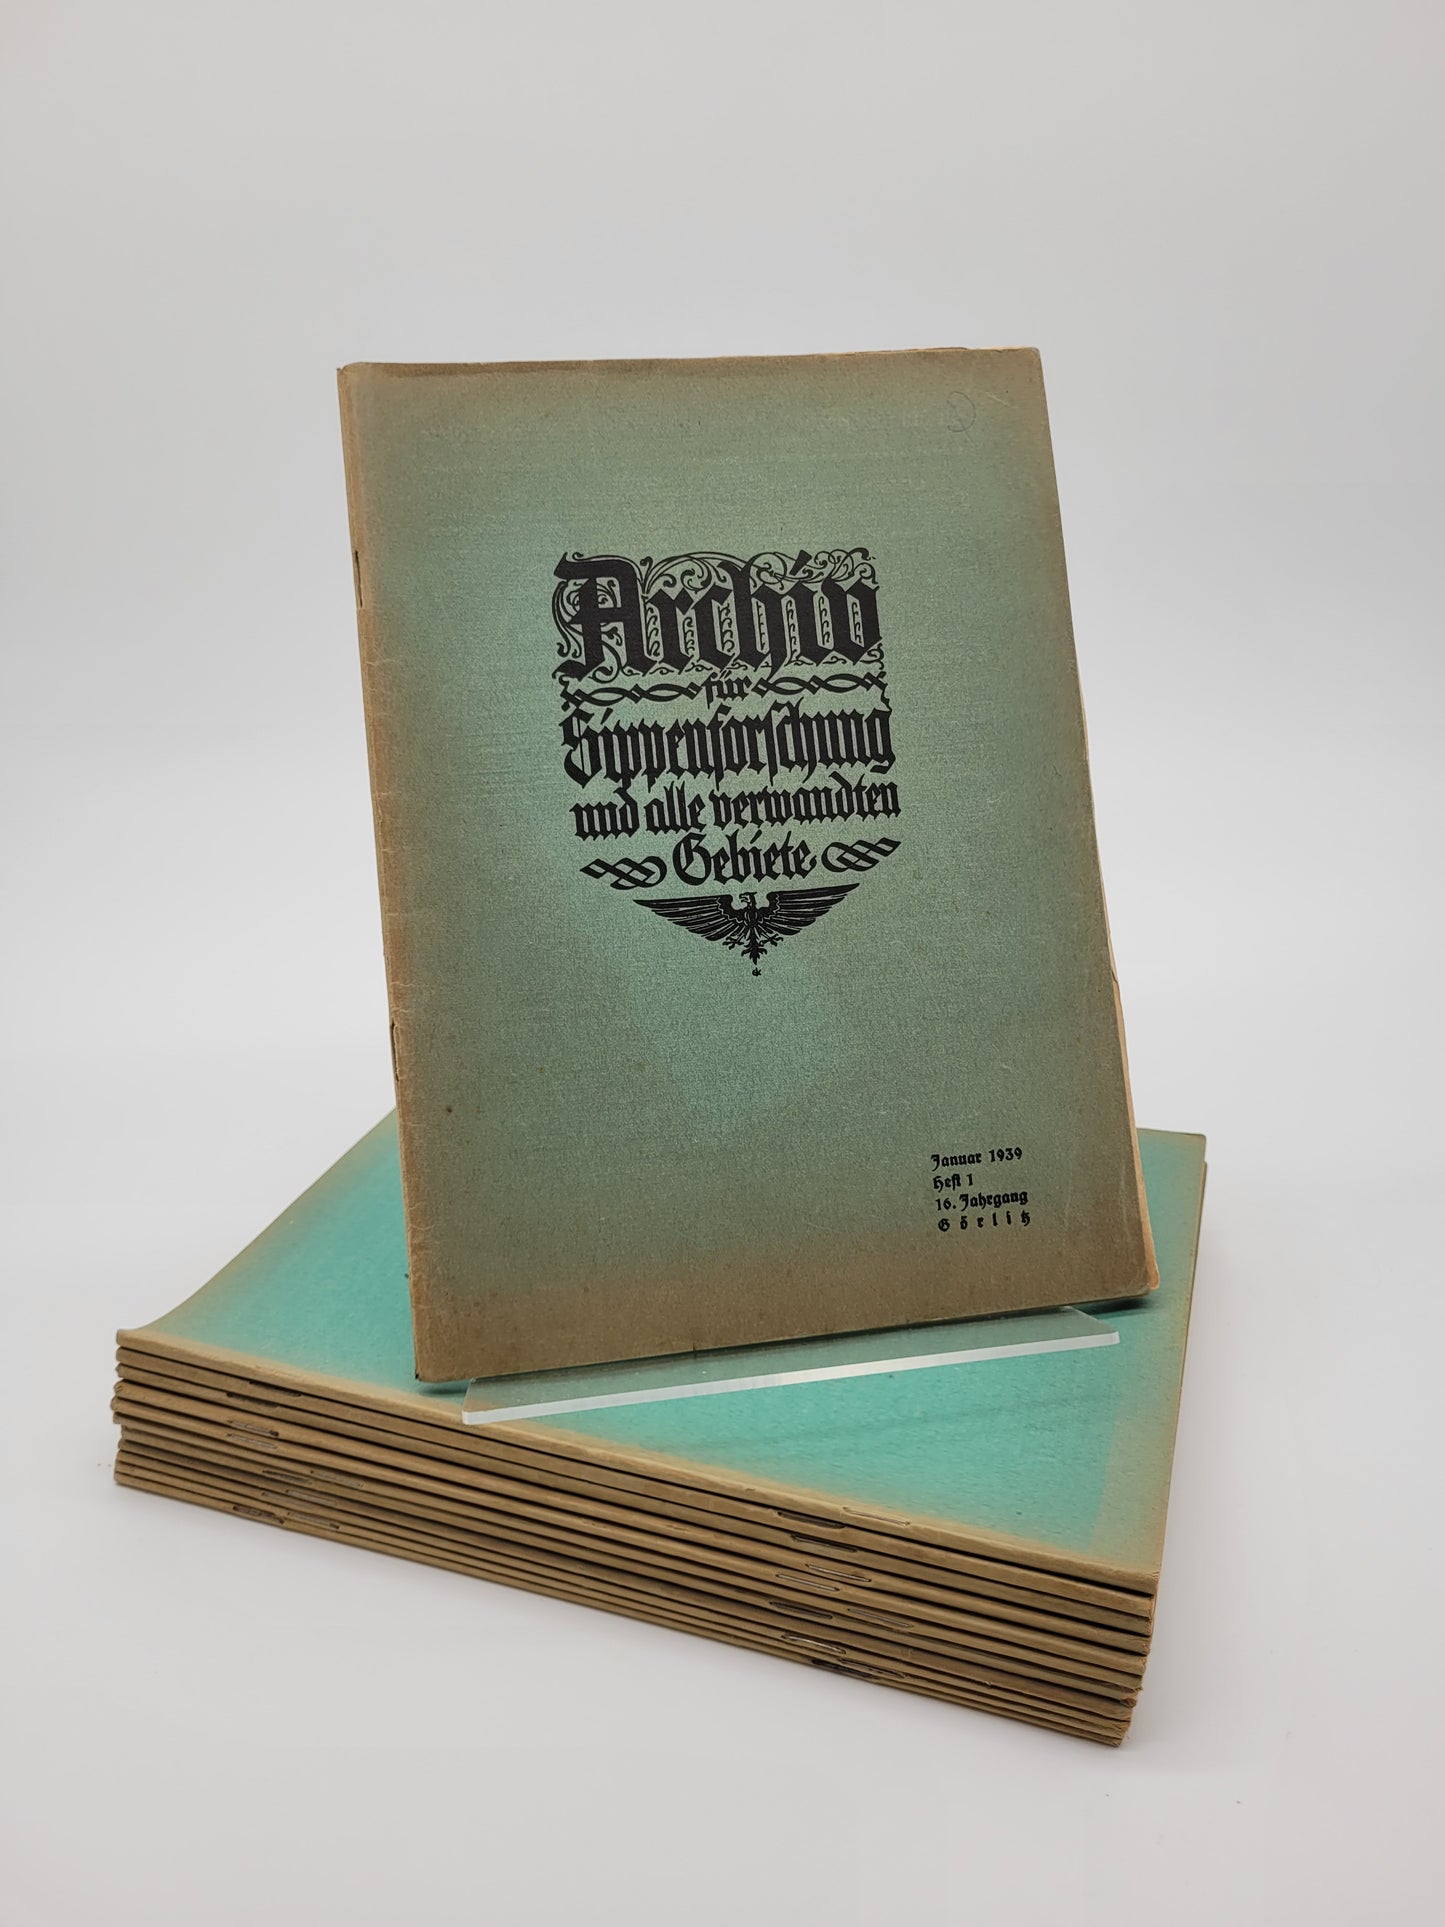 Archiv für Sippenforschung und alle verwandten Gebiete 1939 Kompletter Jahrgang (12 Hefte)